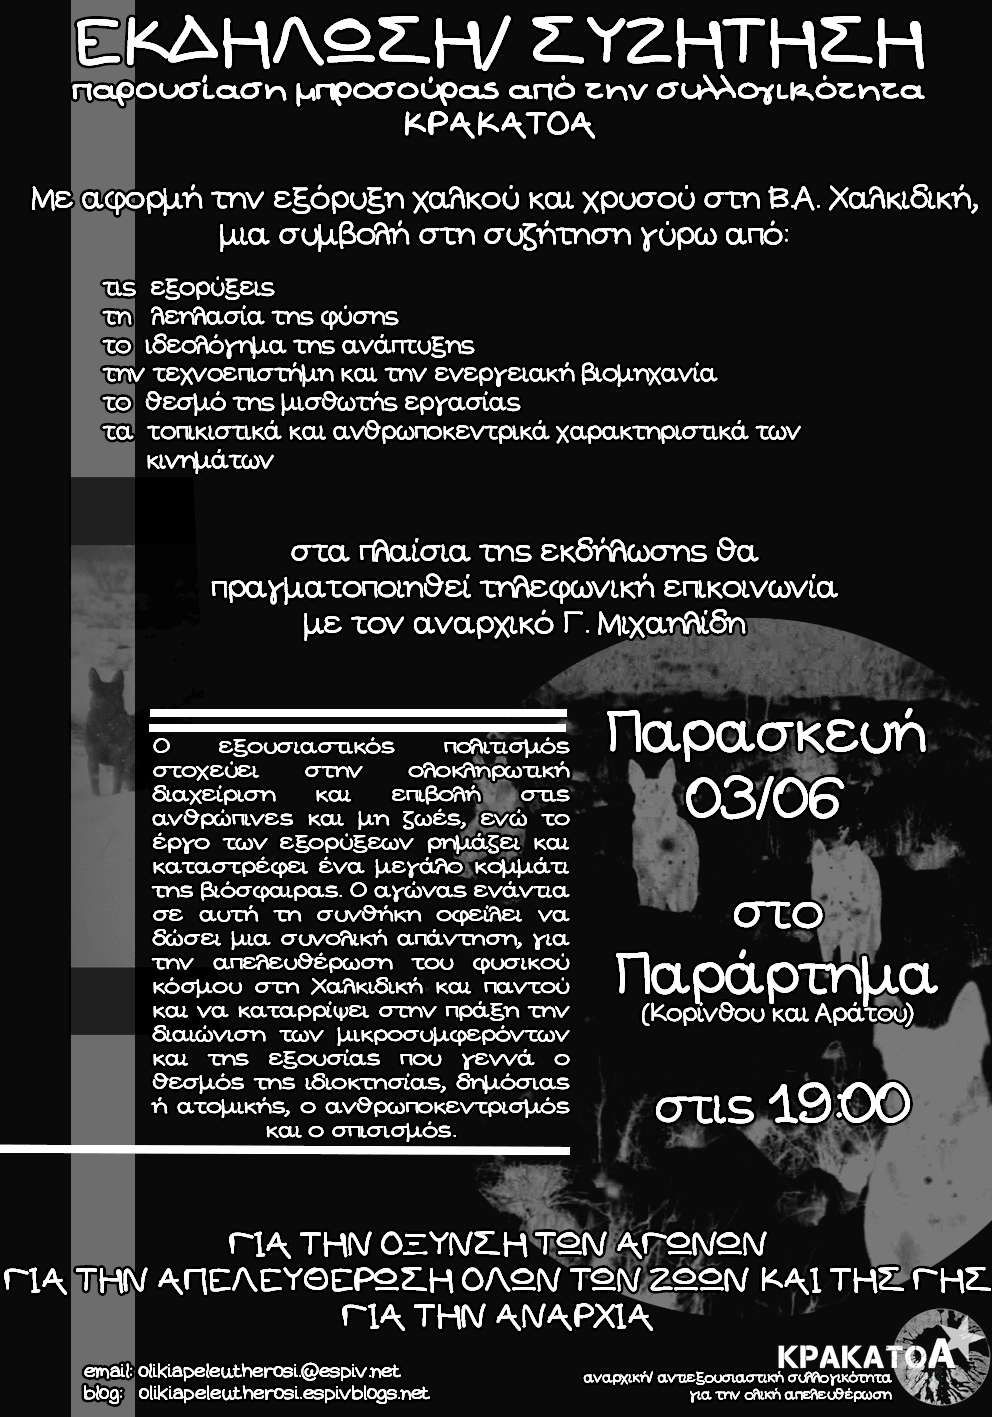 Πάτρα: Εκδήλωση-Συζήτηση με αφορμή την εξόρυξη στη ΒΑ Χαλκιδική: Παρουσίαση μπροσούρας [Τηλεφωνική επικοινωνία με τον αναρχικό Γ.Μιχαηλίδη]